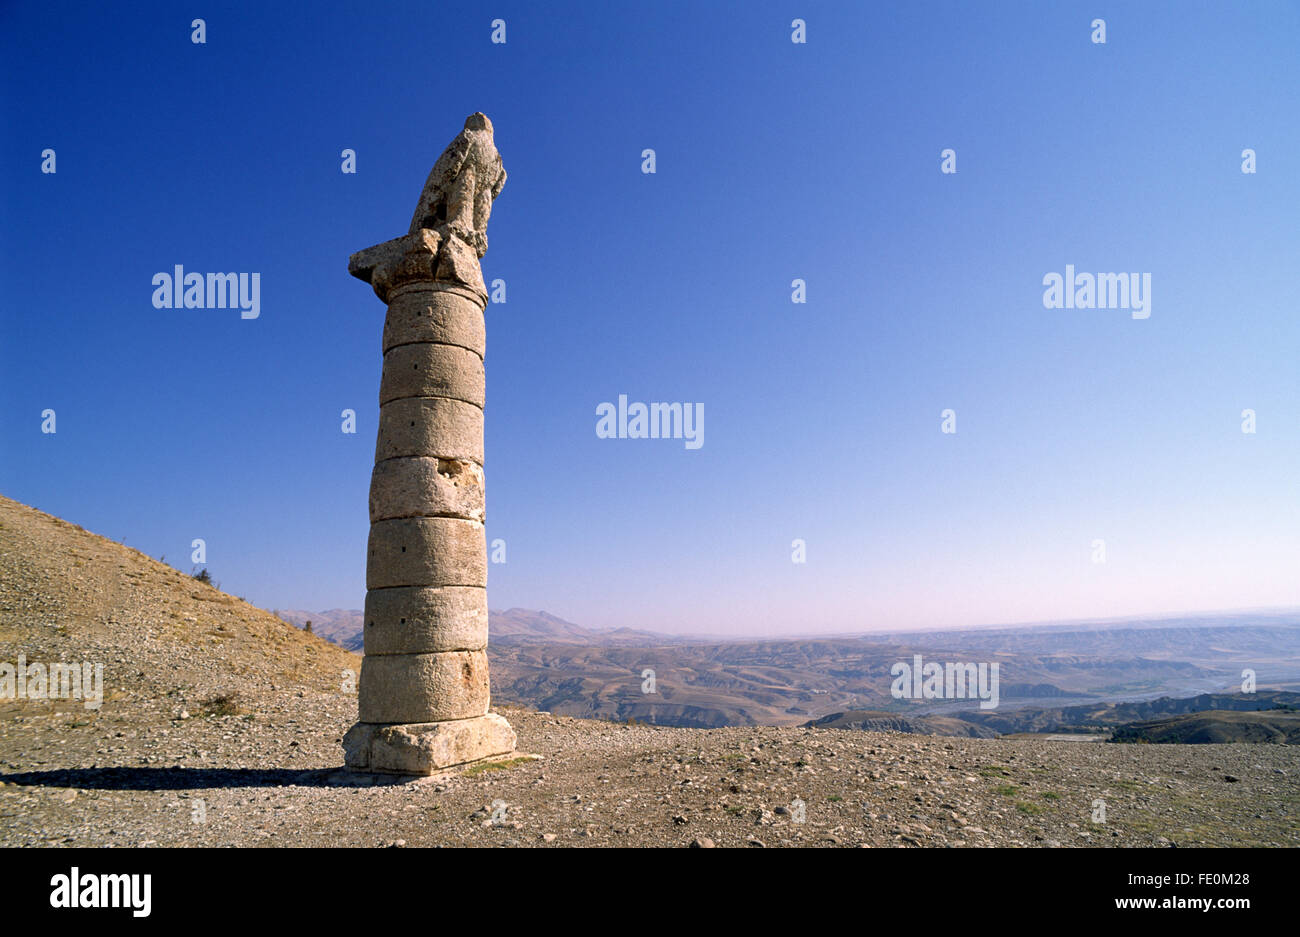 Turkey, South Eastern Anatolia, Karakuş, Eagle column Stock Photo